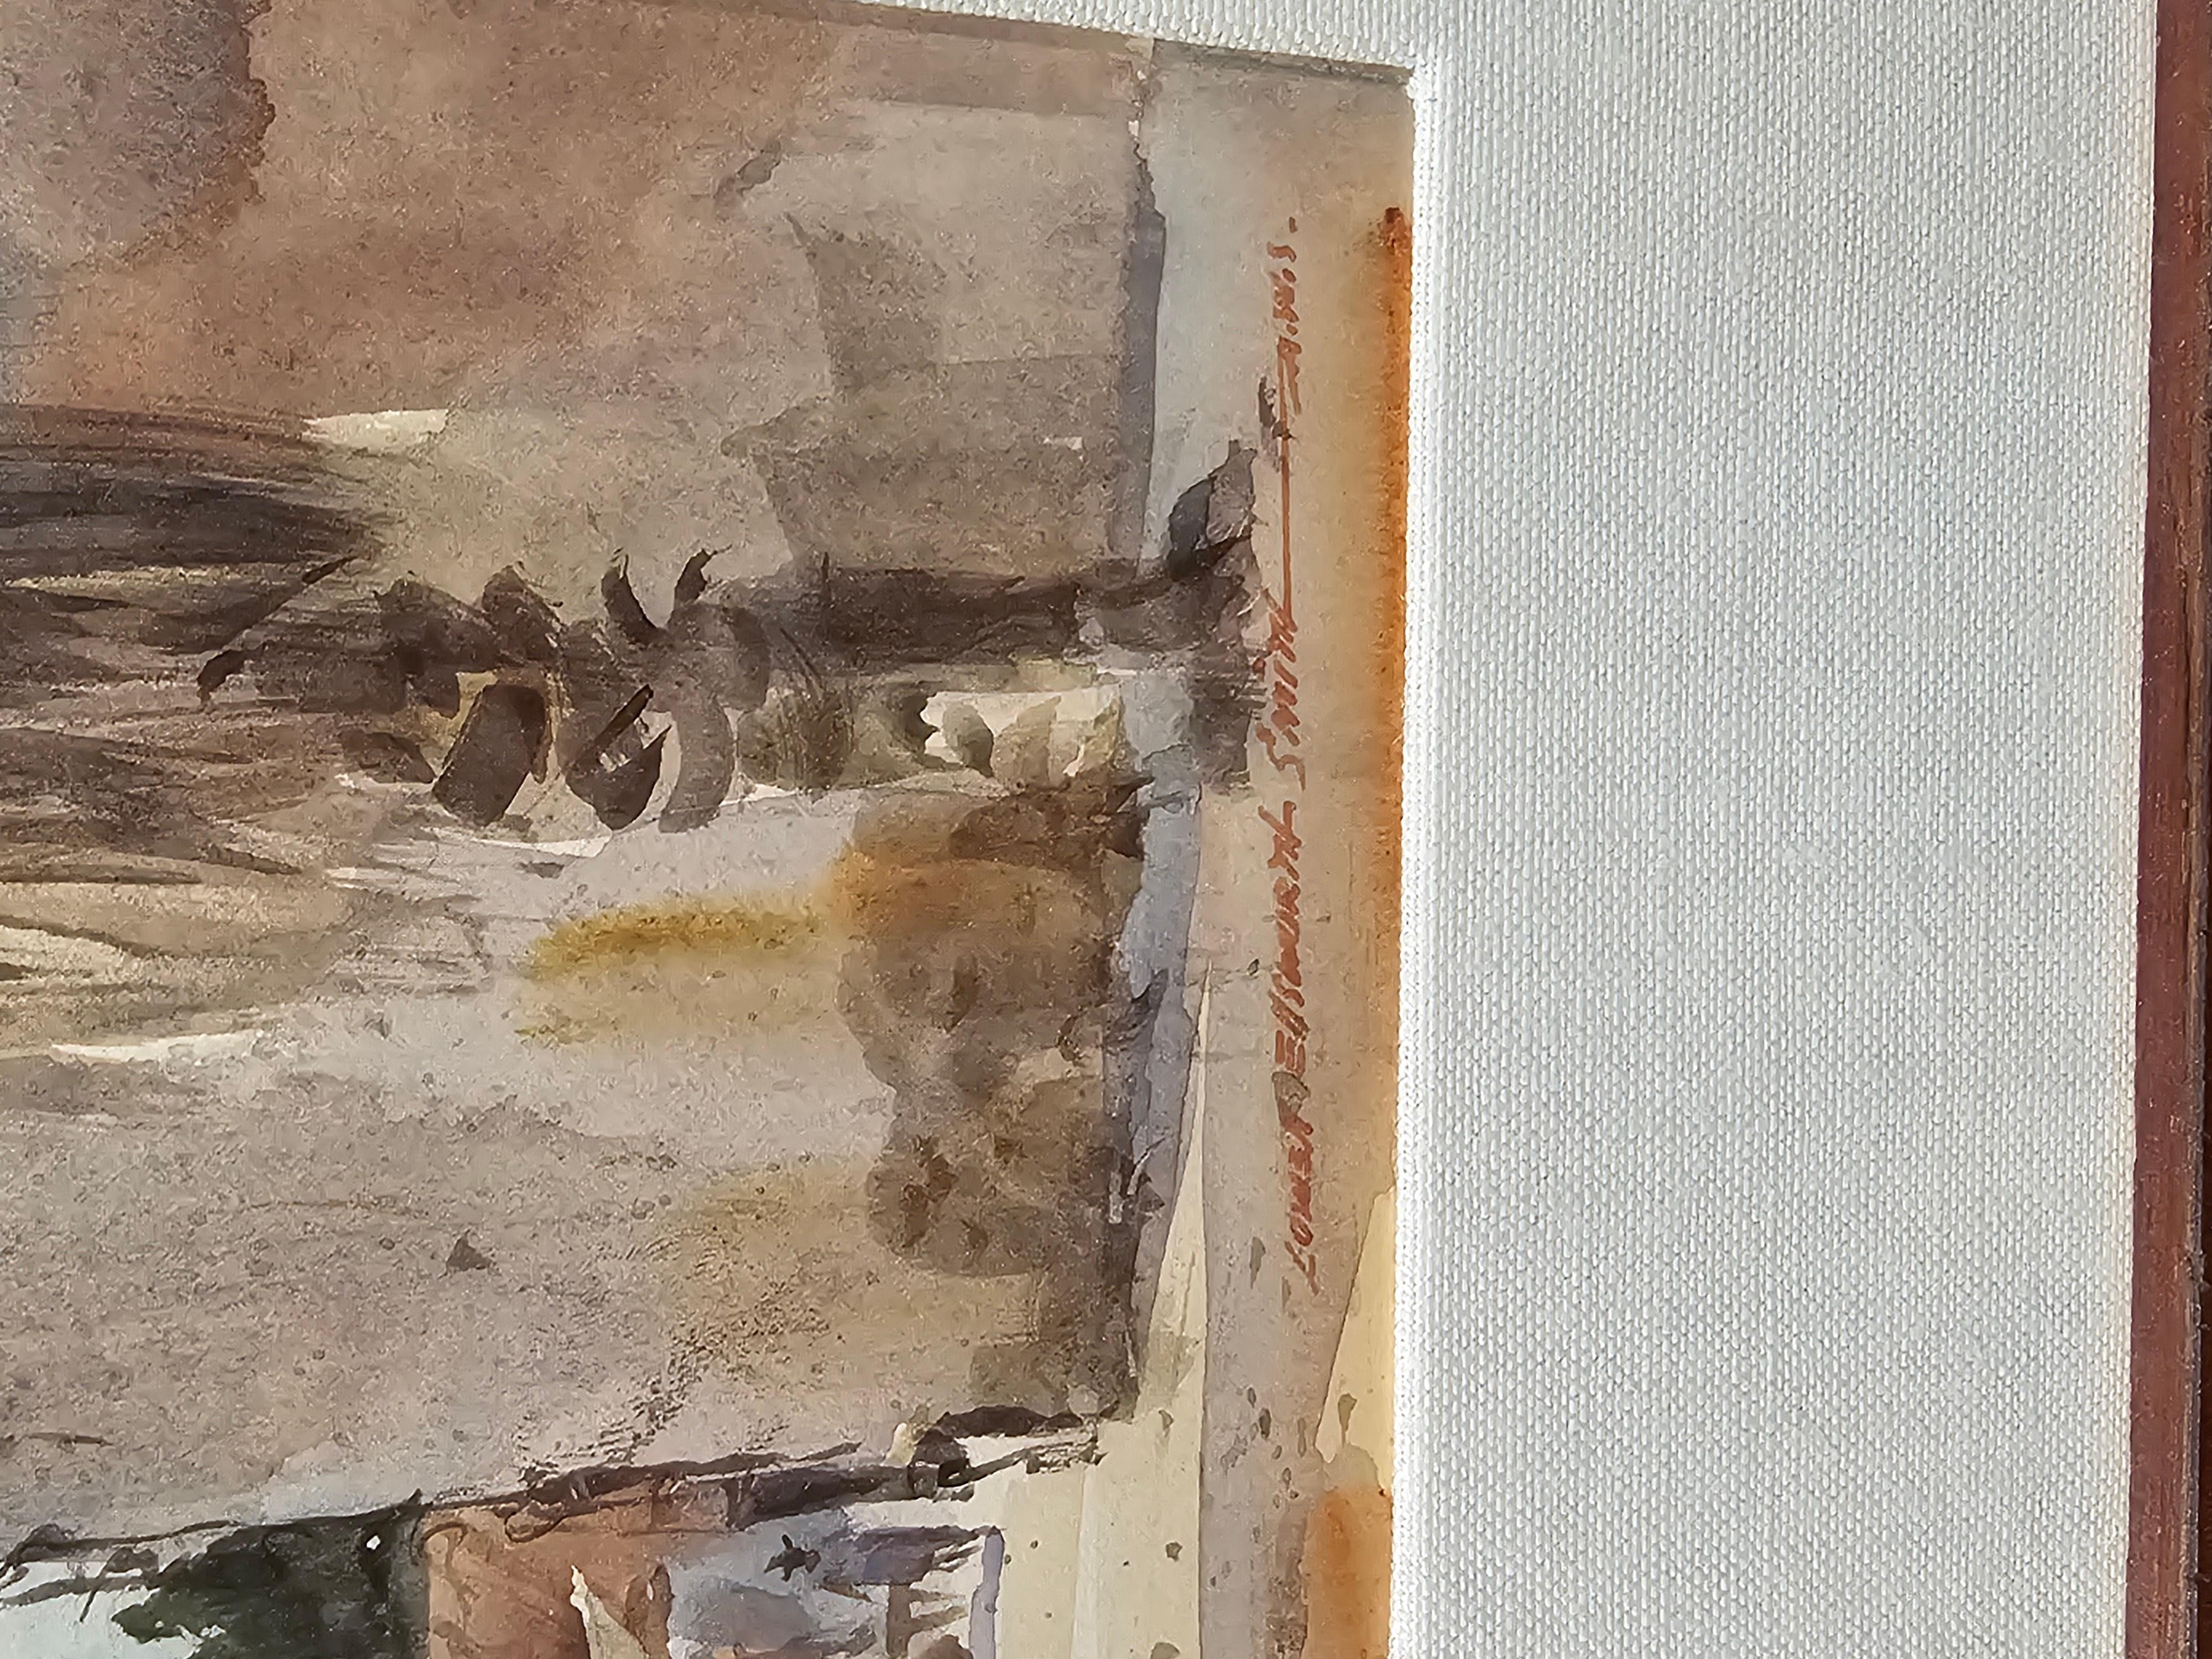 signée en bas à droite Lowell Ellsworth Smith, membre de l'American Watercolor Society.  Dans un superbe cadre neuf avec passe-partout en lin fin.  En parfait état.  Taille de l'image 10 1/2 x 7 pouces.  L'image montre un marché du sud-ouest, qui